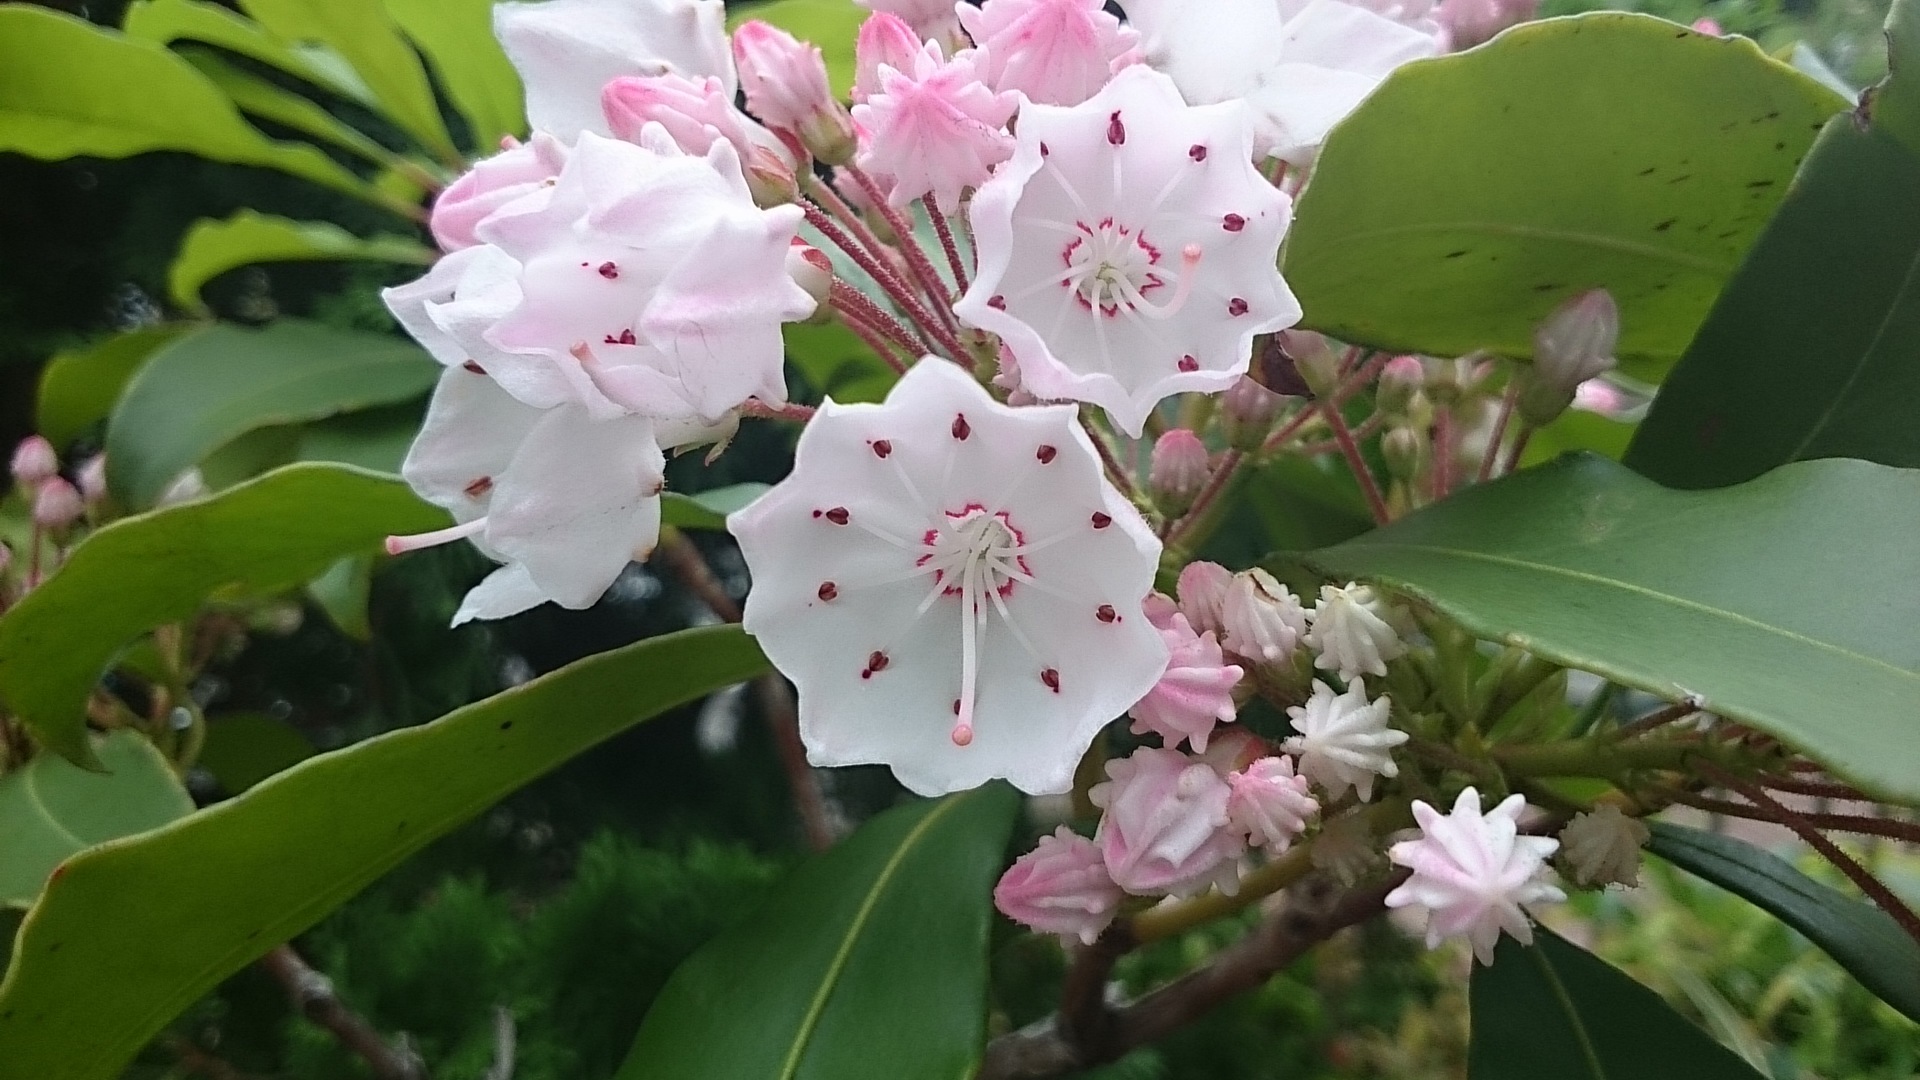 かわいい花 名前不明 二反割公園近く 江戸川区の花と観葉植物の花男日記